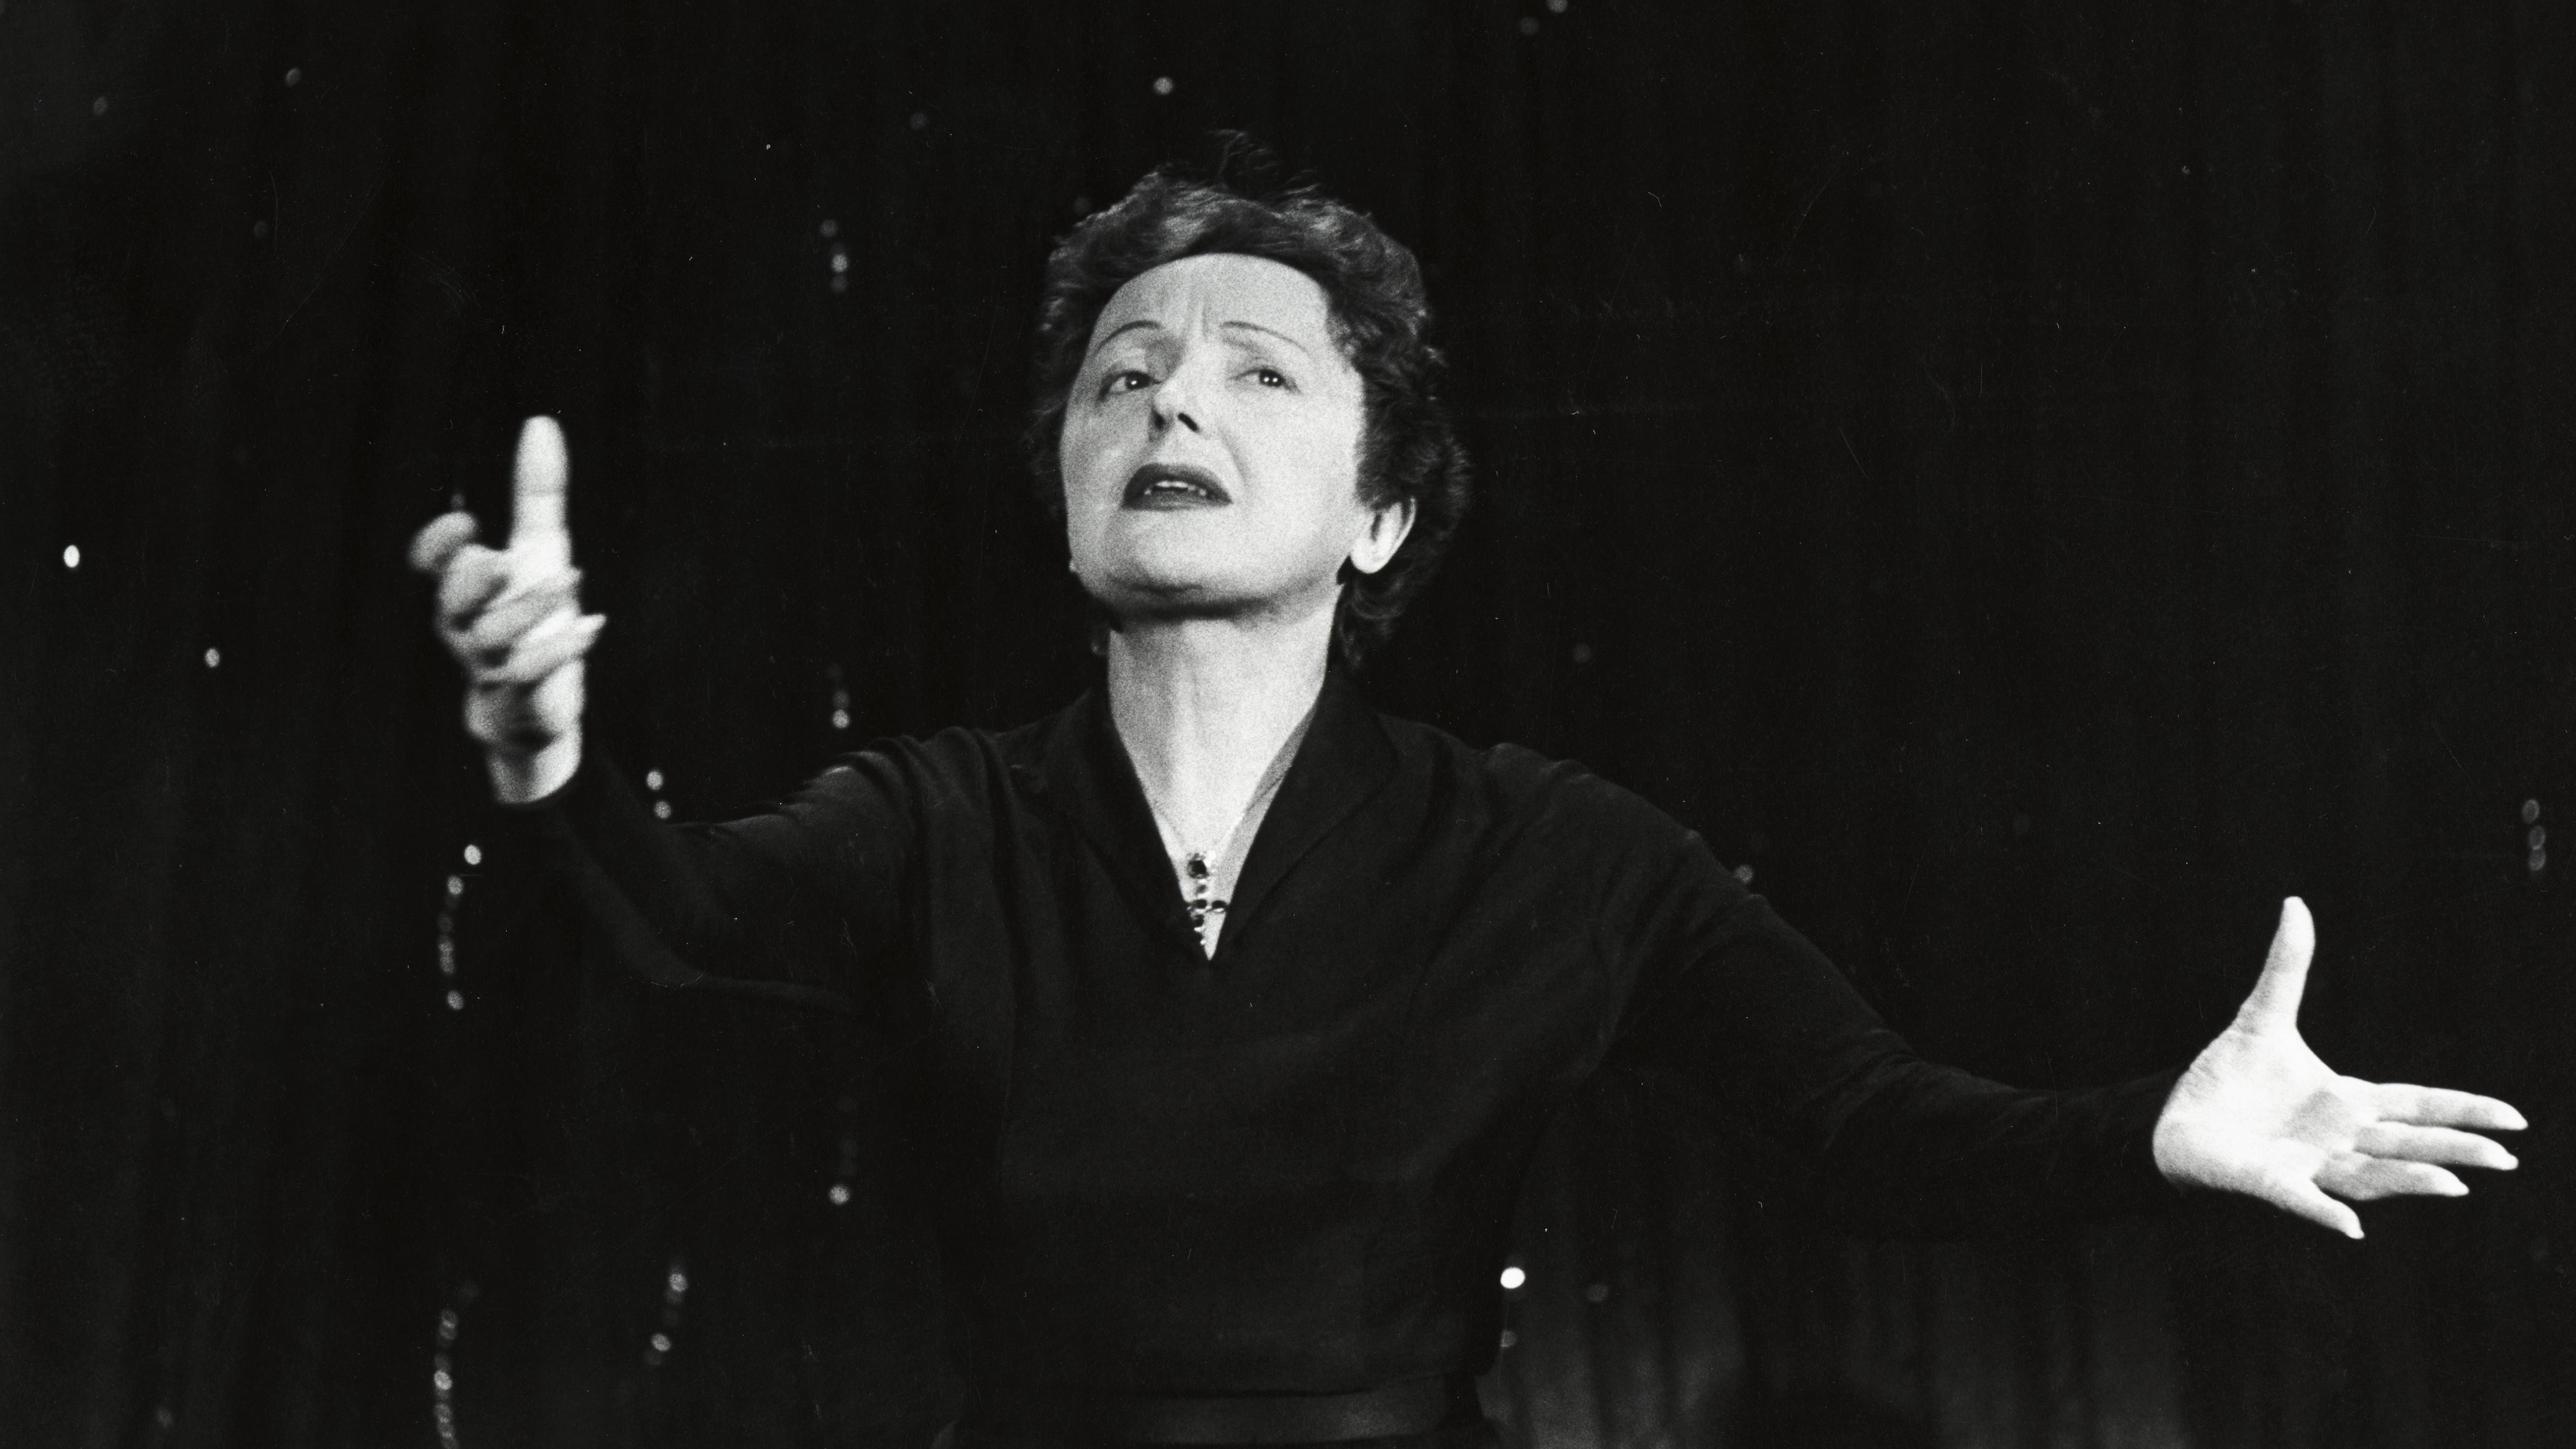 La discographie d Édith Piaf présentée dans un catalogue